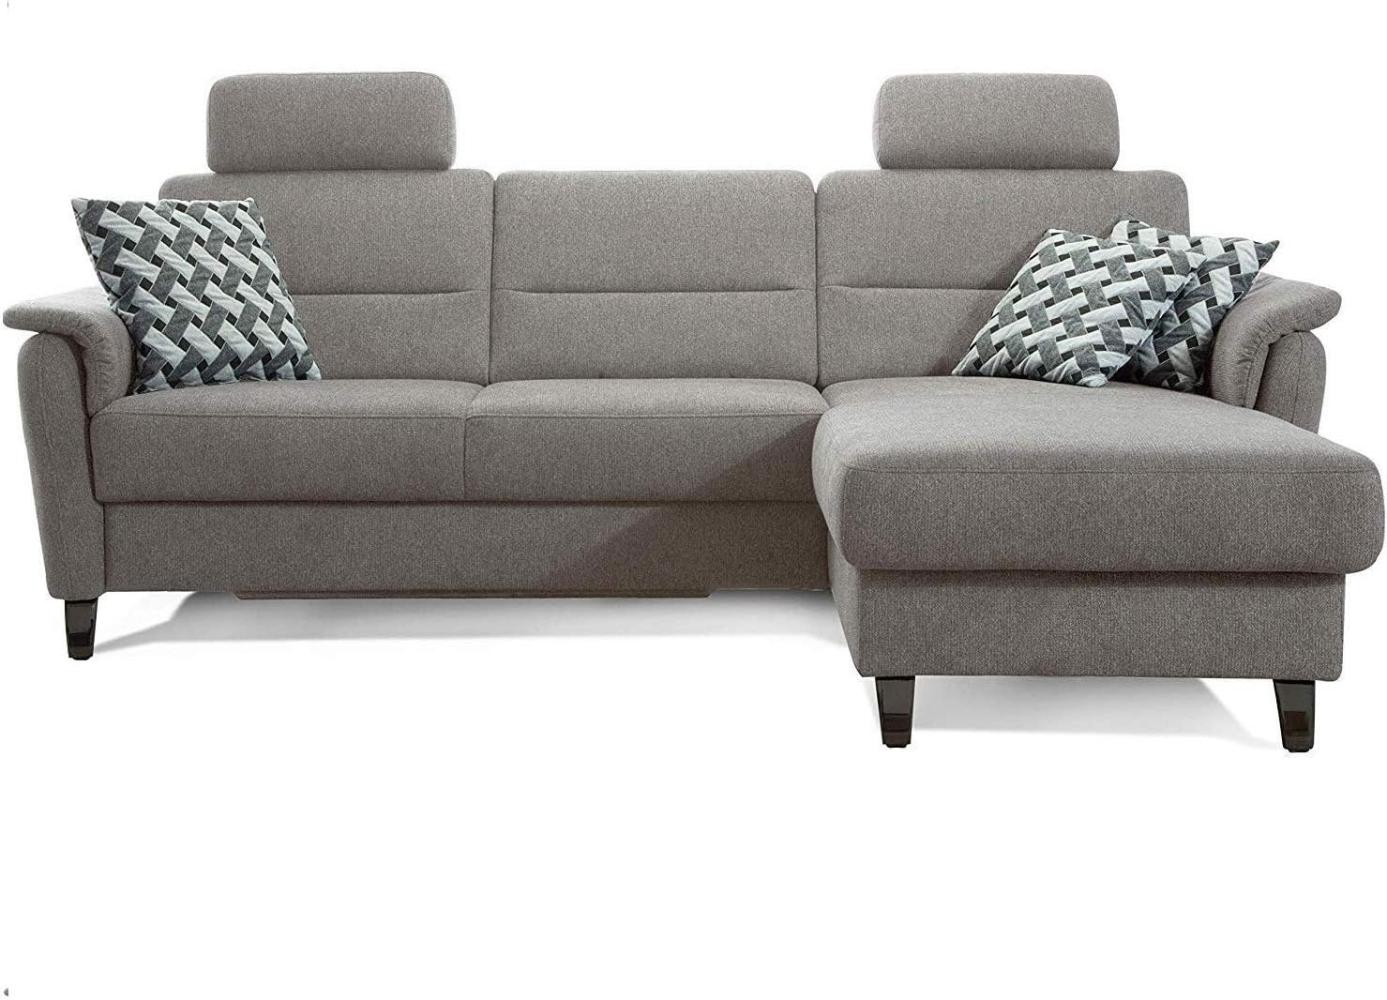 Cavadore Schlafsofa Palera mit Federkern / L-Form Sofa mit Bettfunktion / 244 x 89 x 164 / Stoff Hellgrau Bild 1